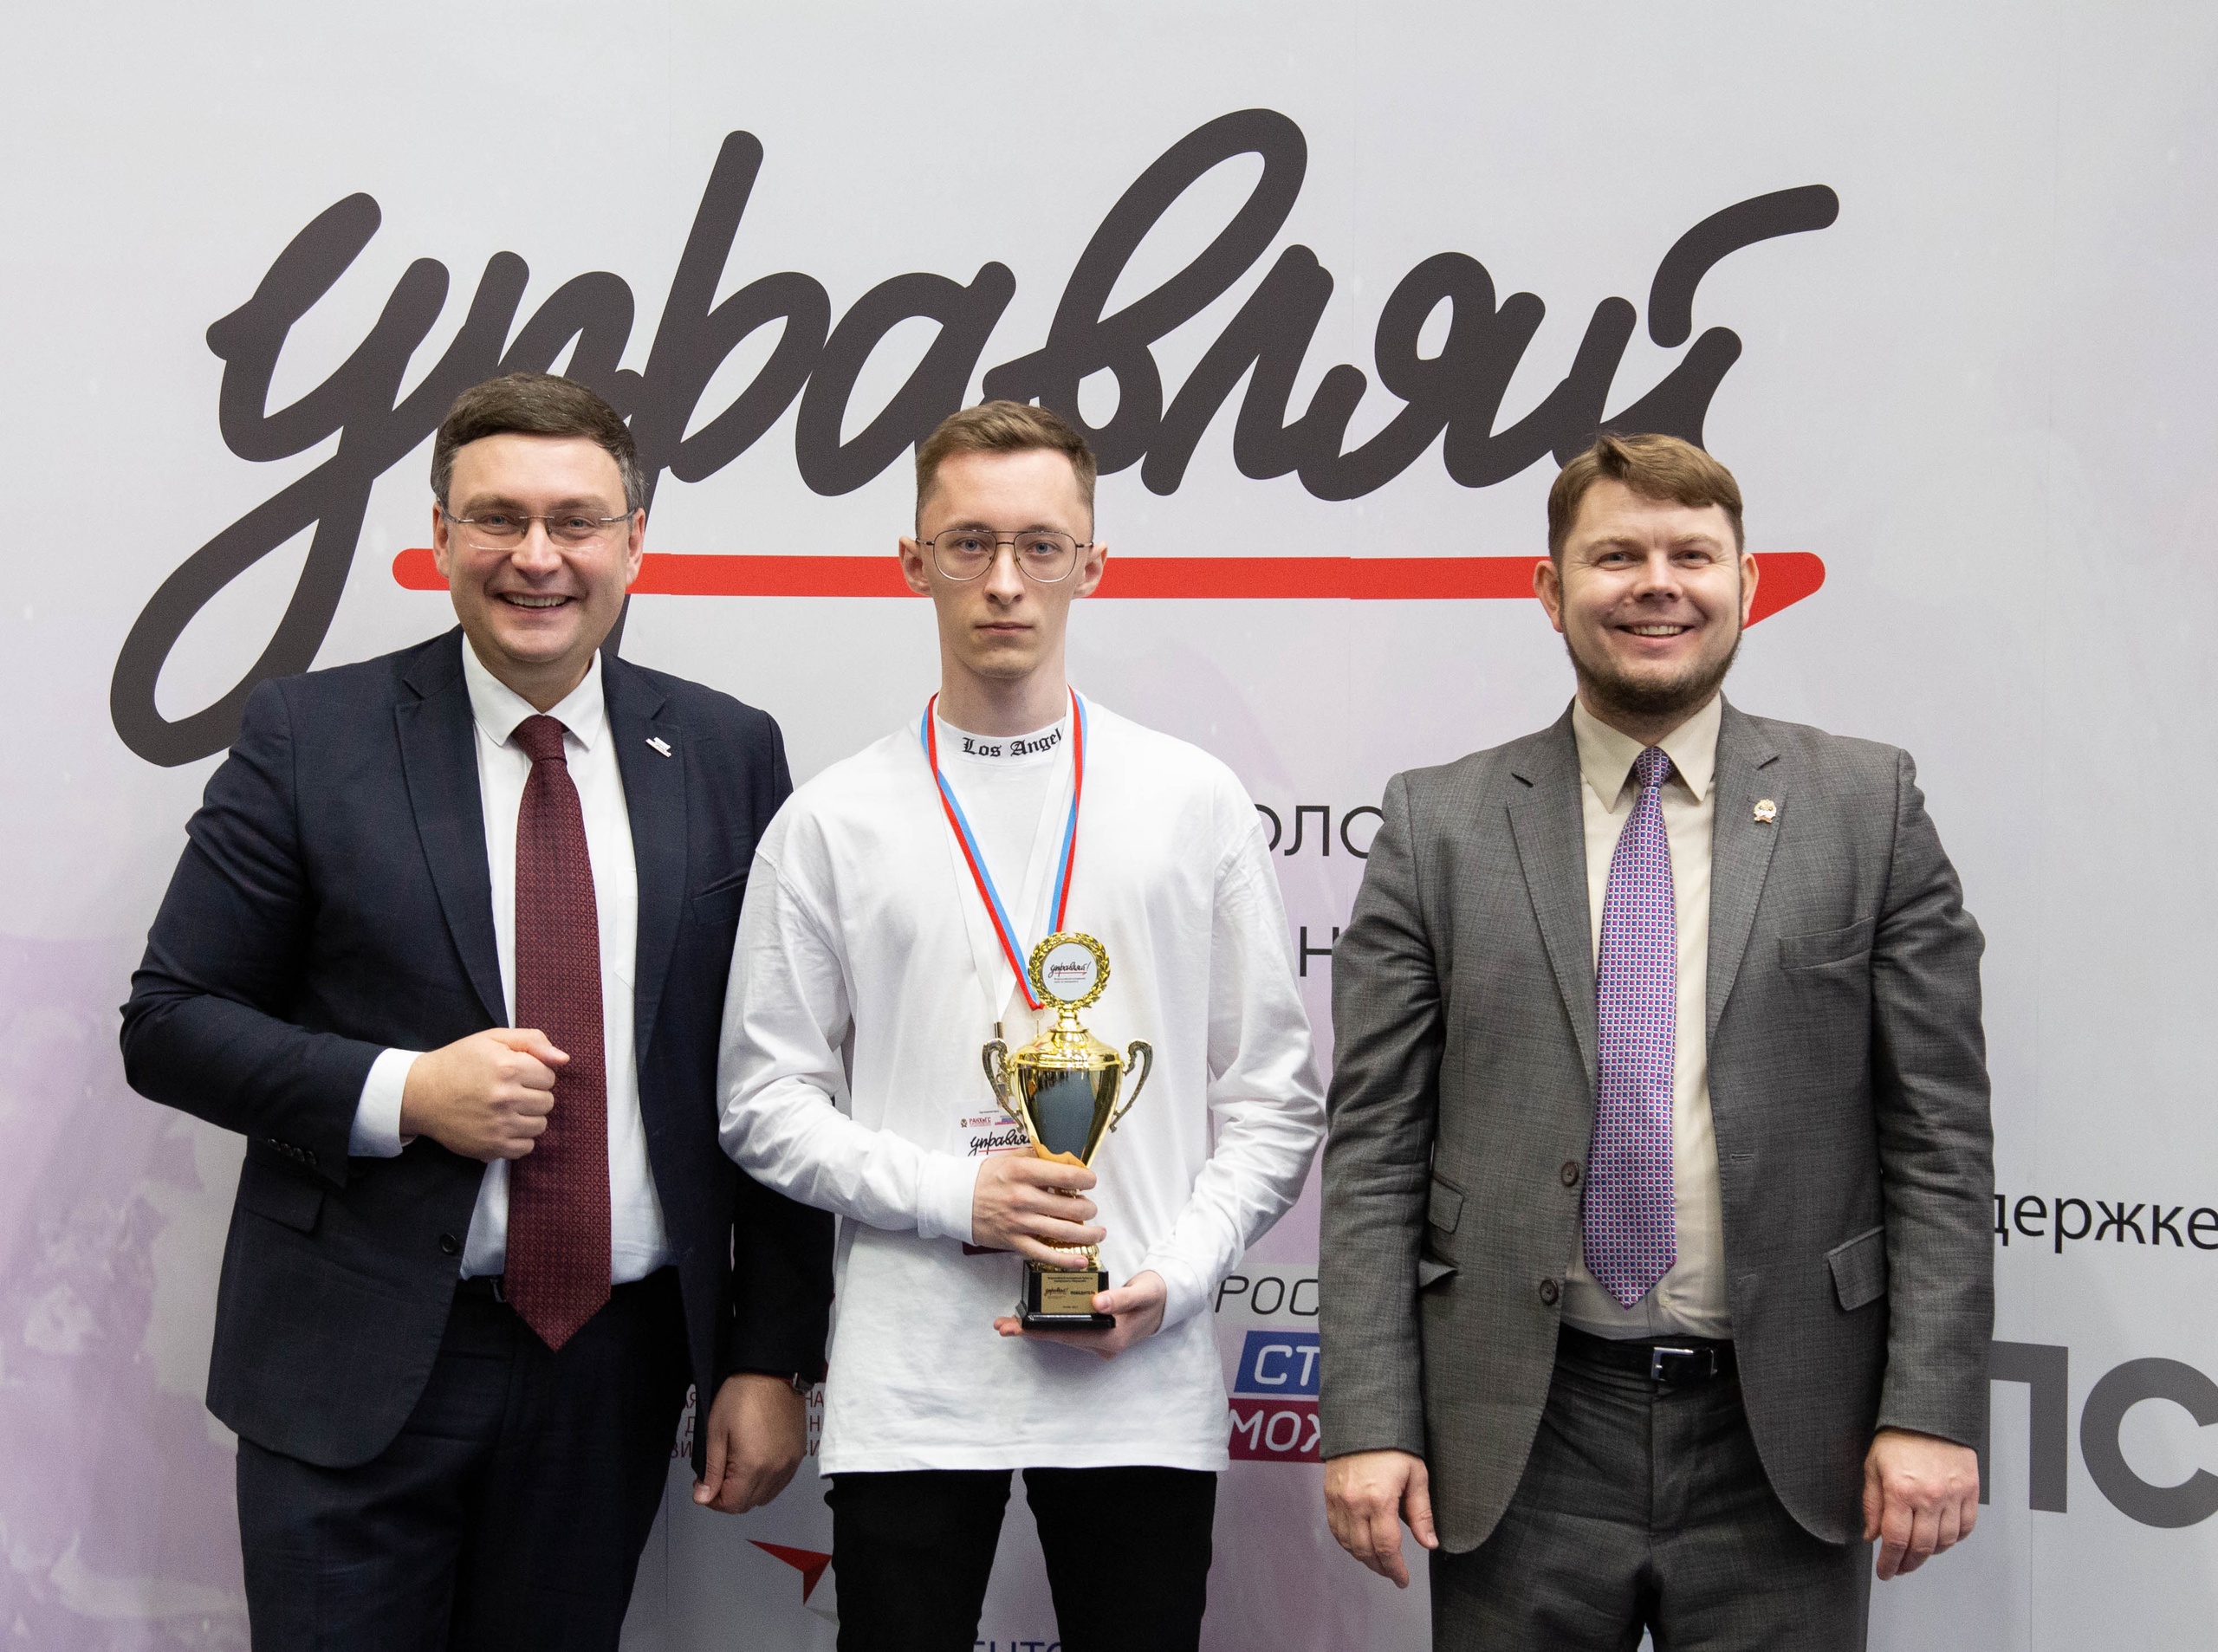 Смоленский студент Анатолий Веремьев стал победителем Всероссийского кубка по менеджменту «Управляй!»